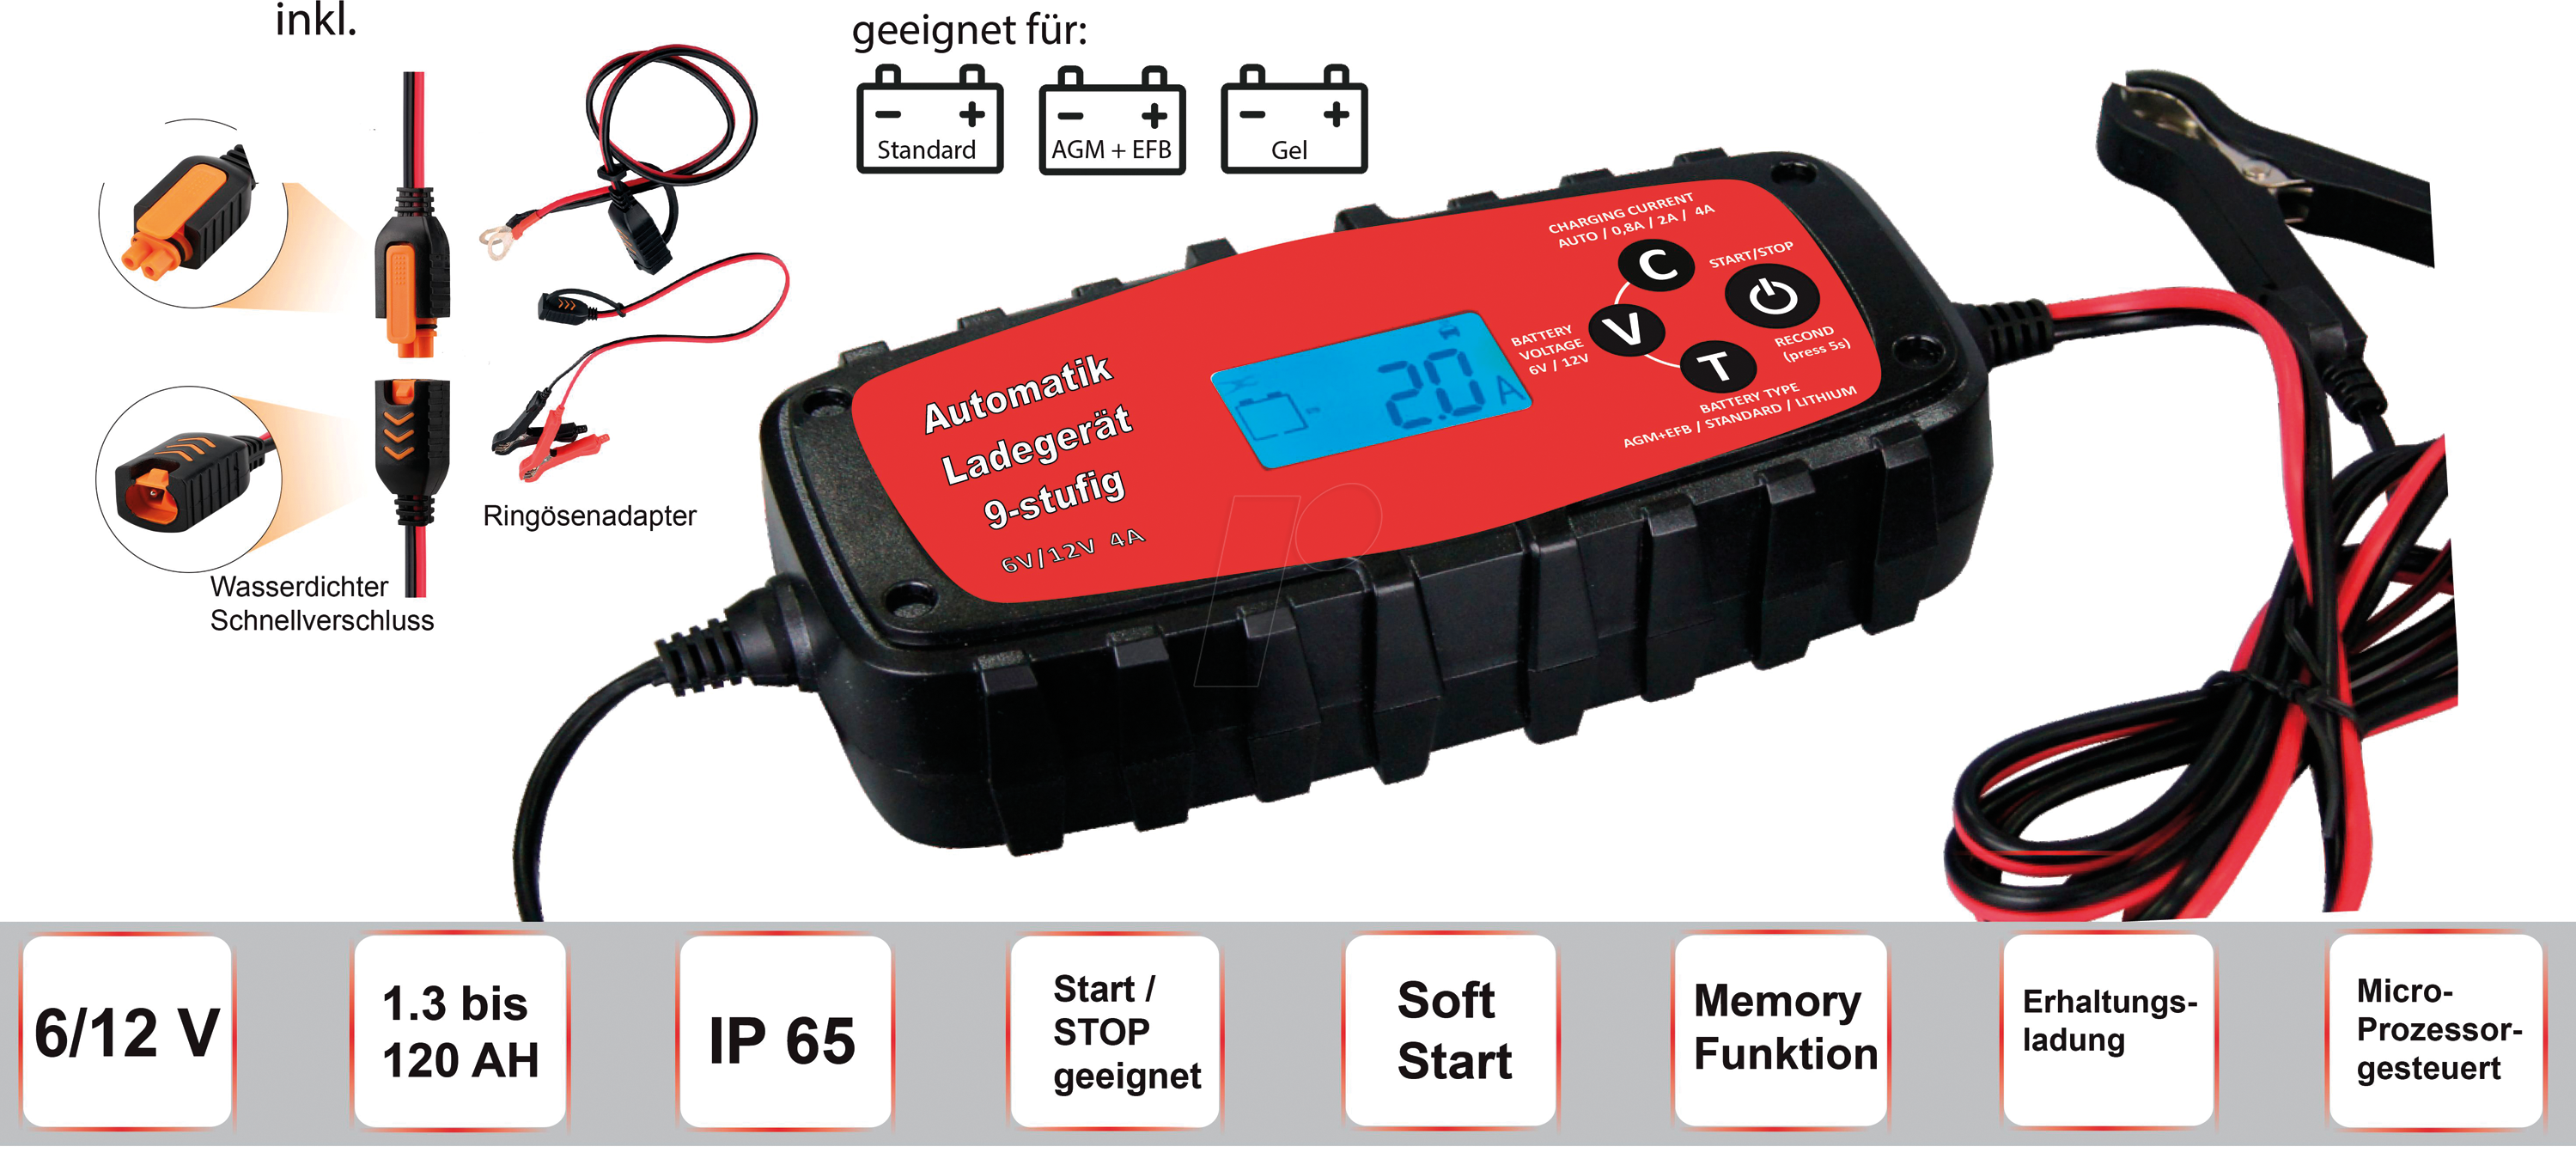 IWH 075900: Automatik-Ladegerät für Bleiakkus, LiFePO4, 6 - 12V, 4A bei  reichelt elektronik